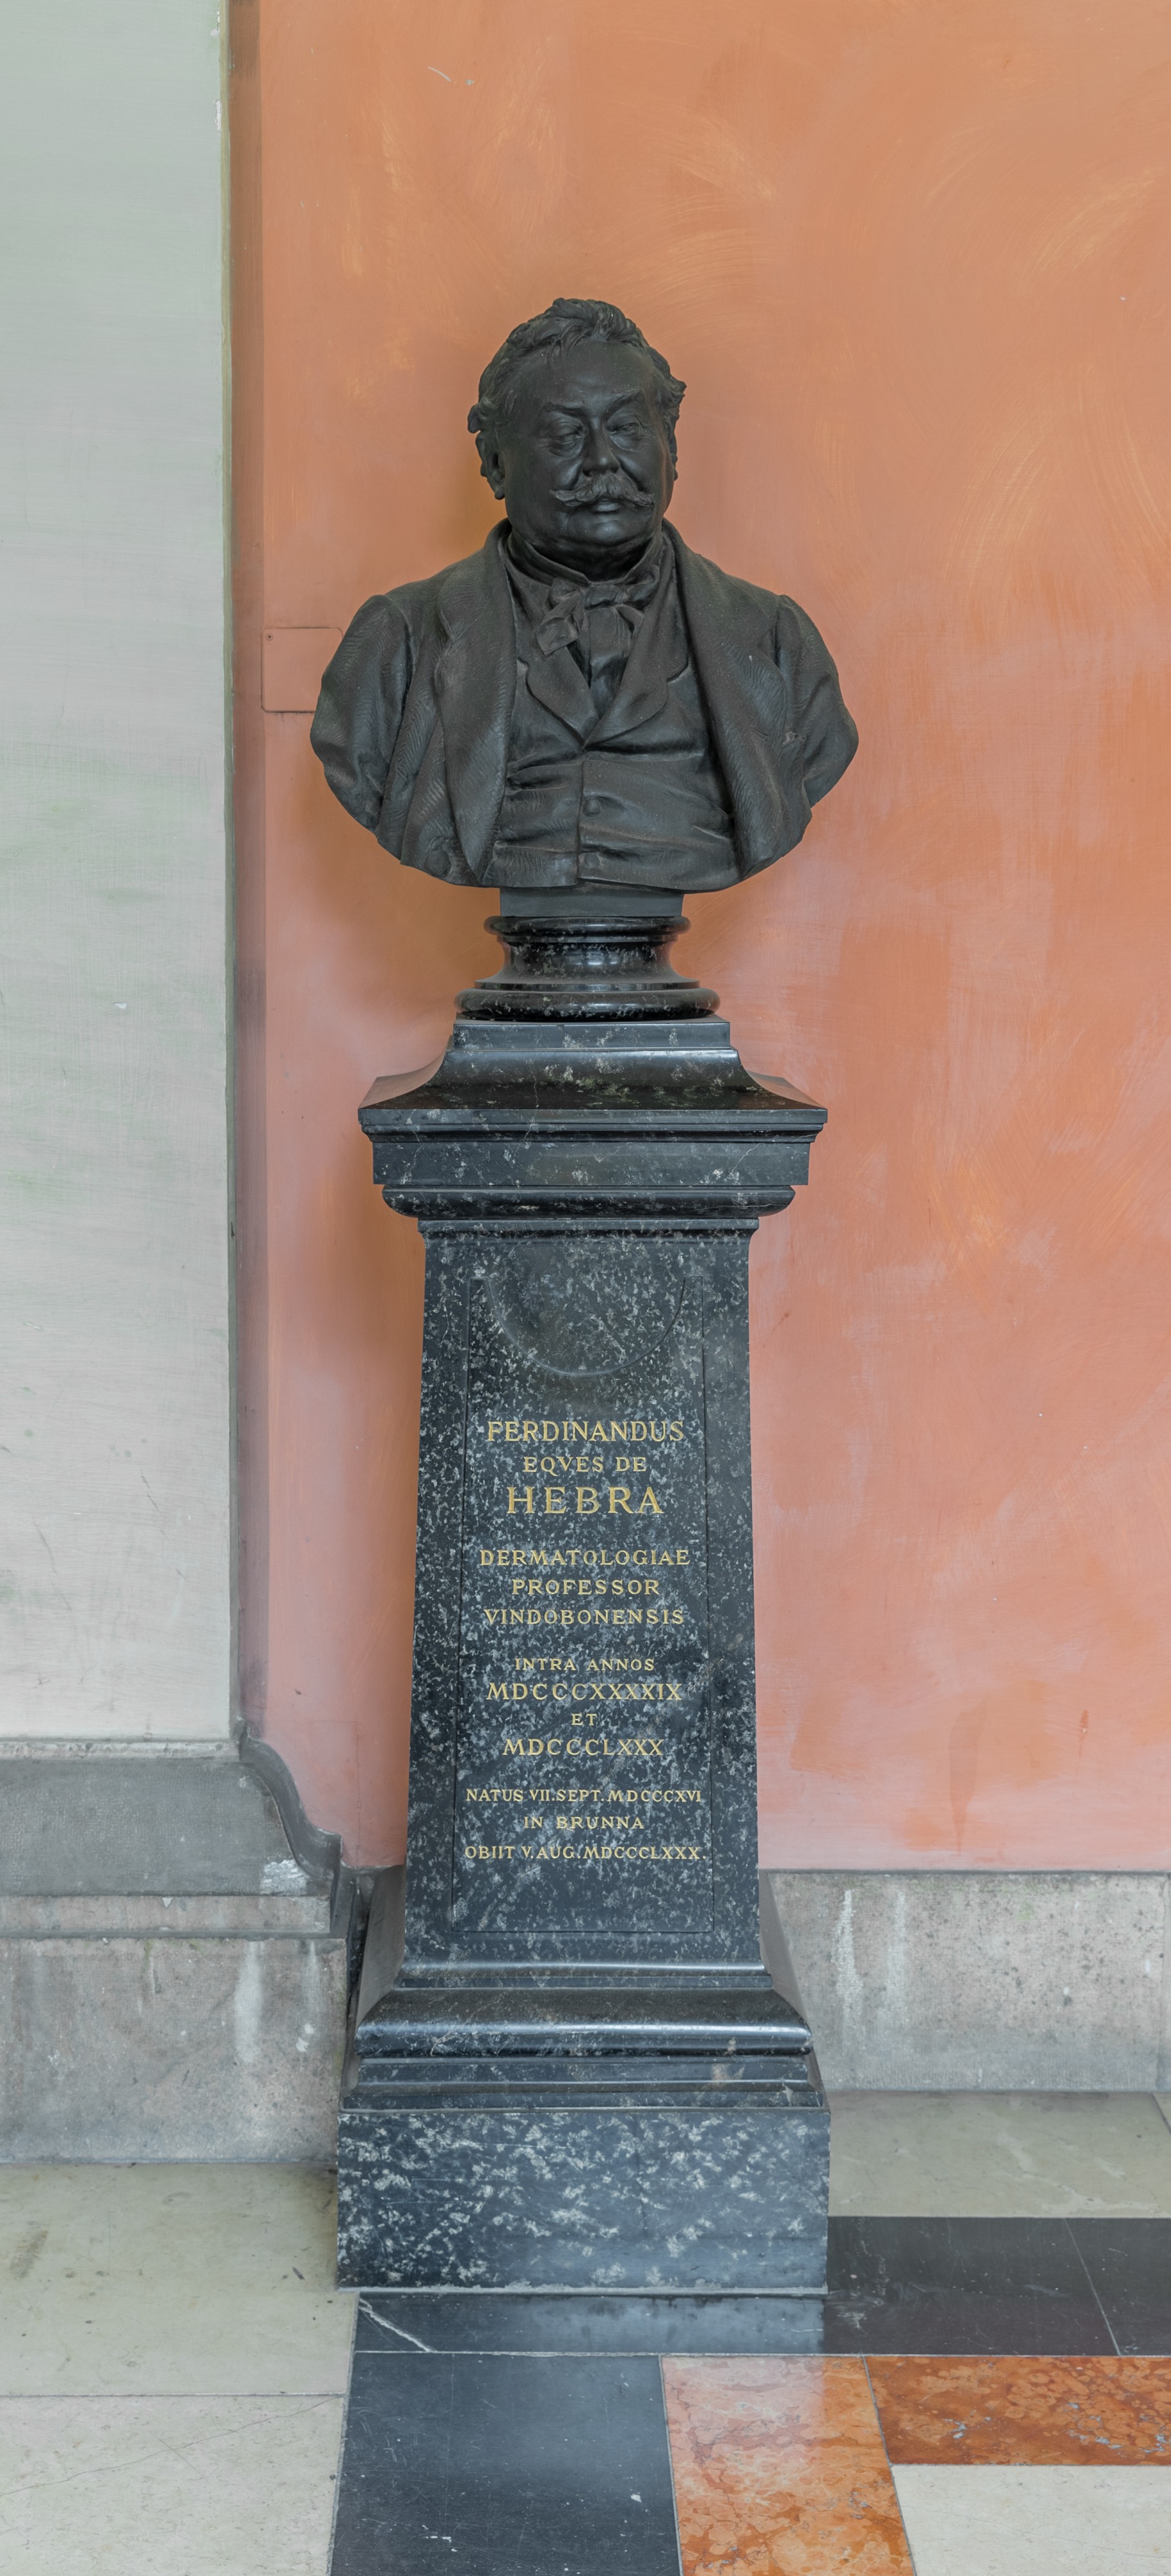 Ferdinand von Hebra (1816-1880), Nr. 106, bust (bronze) in the Arkadenhof of the University of Vienna-2537-HDR-2